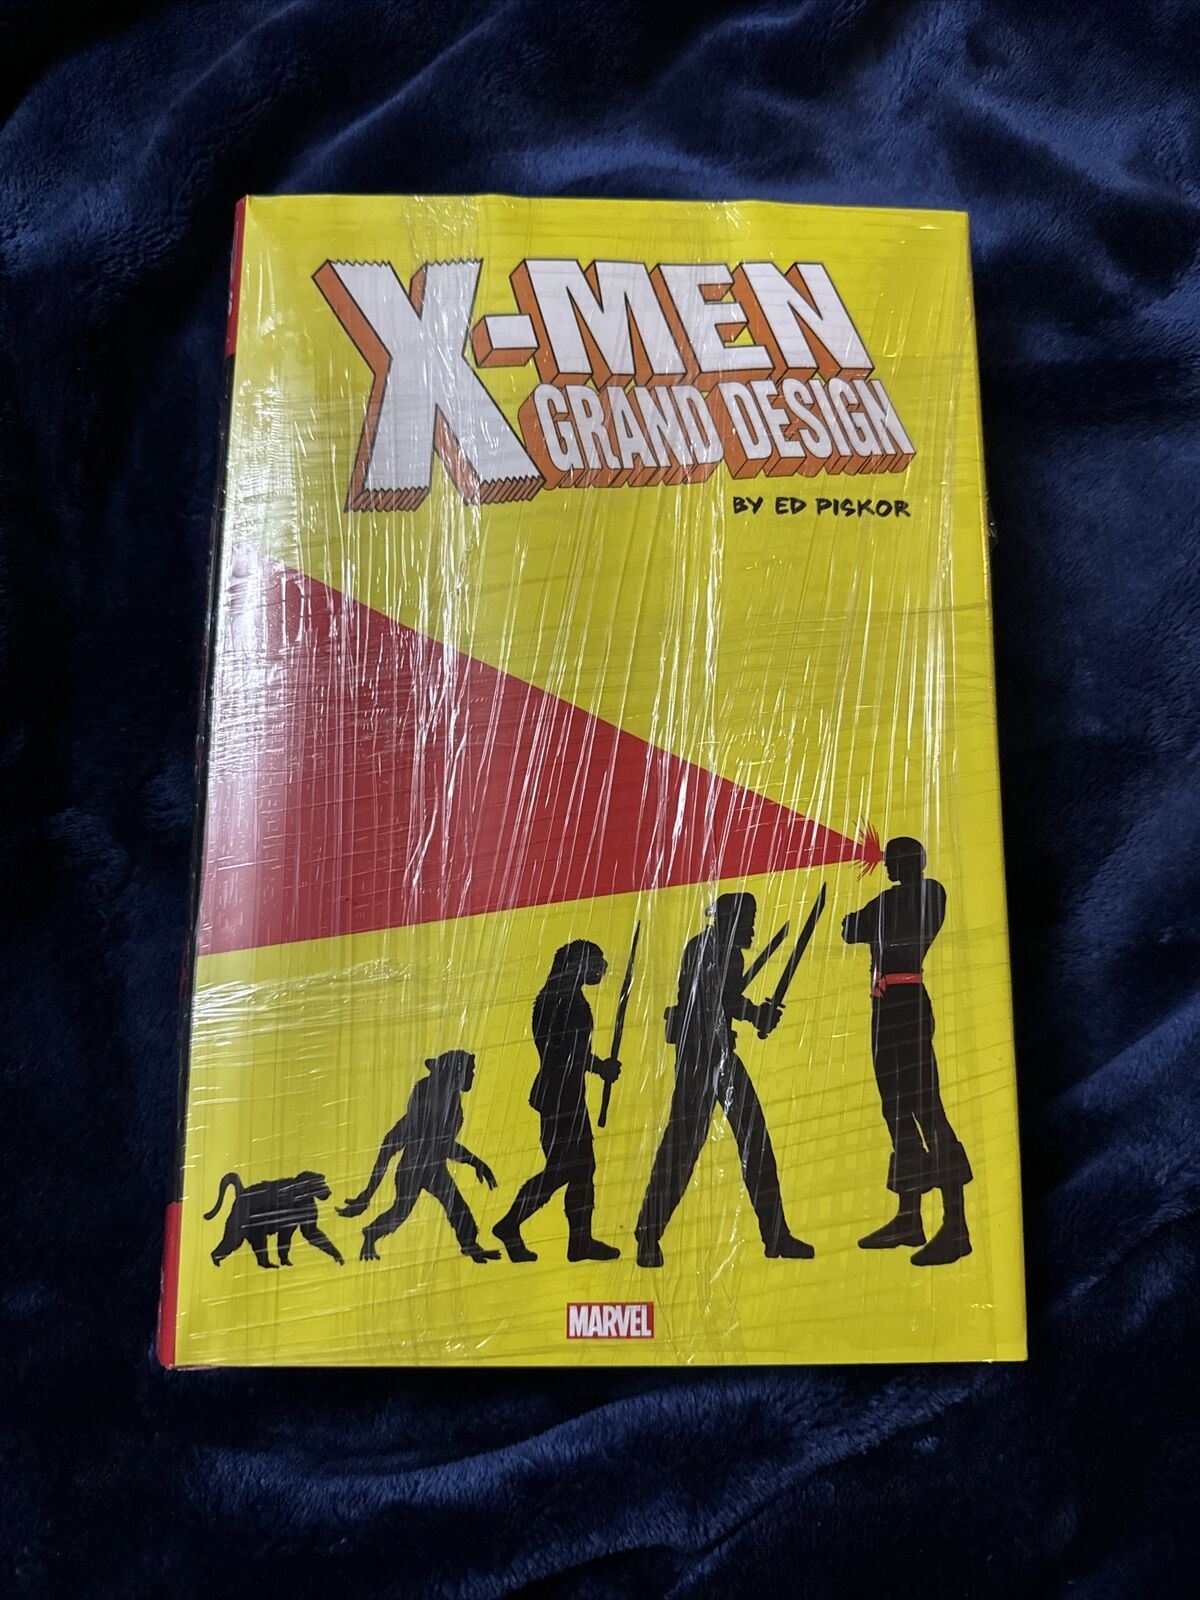 Marvel X-MEN GRAND DESIGN Omnibus - Ed Piskor HC Hardcover NEW SEALED